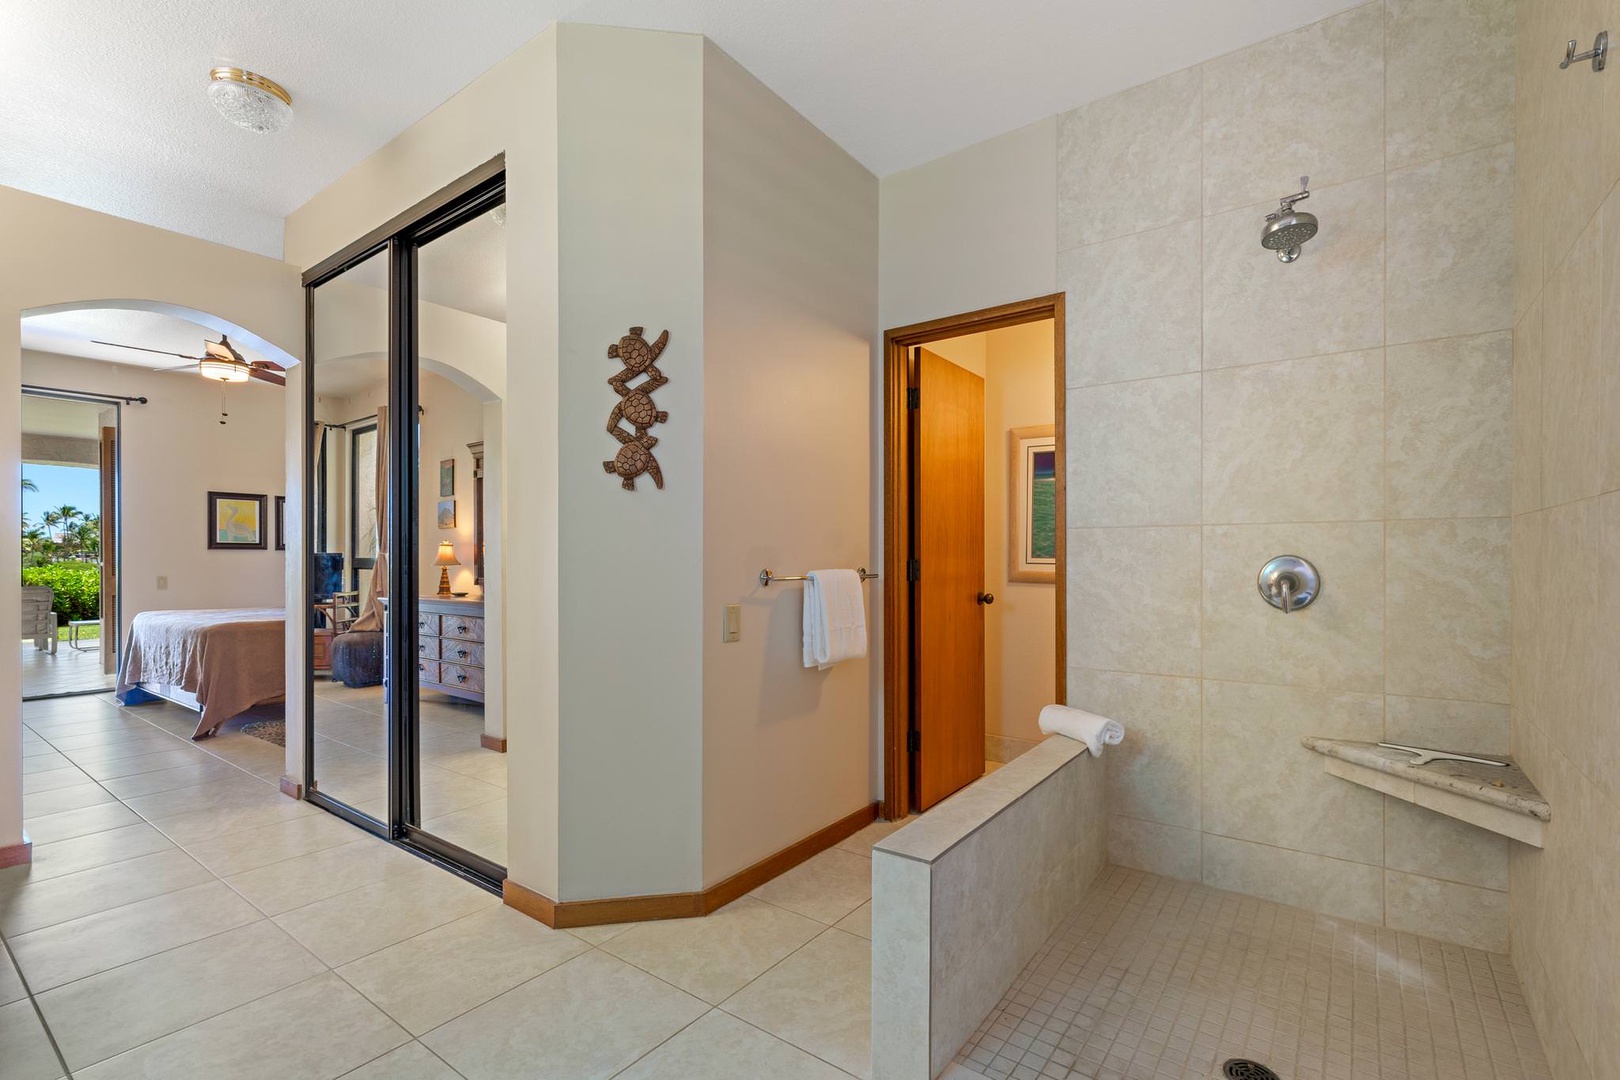 En suite bathroom with open standing shower, dual sinks